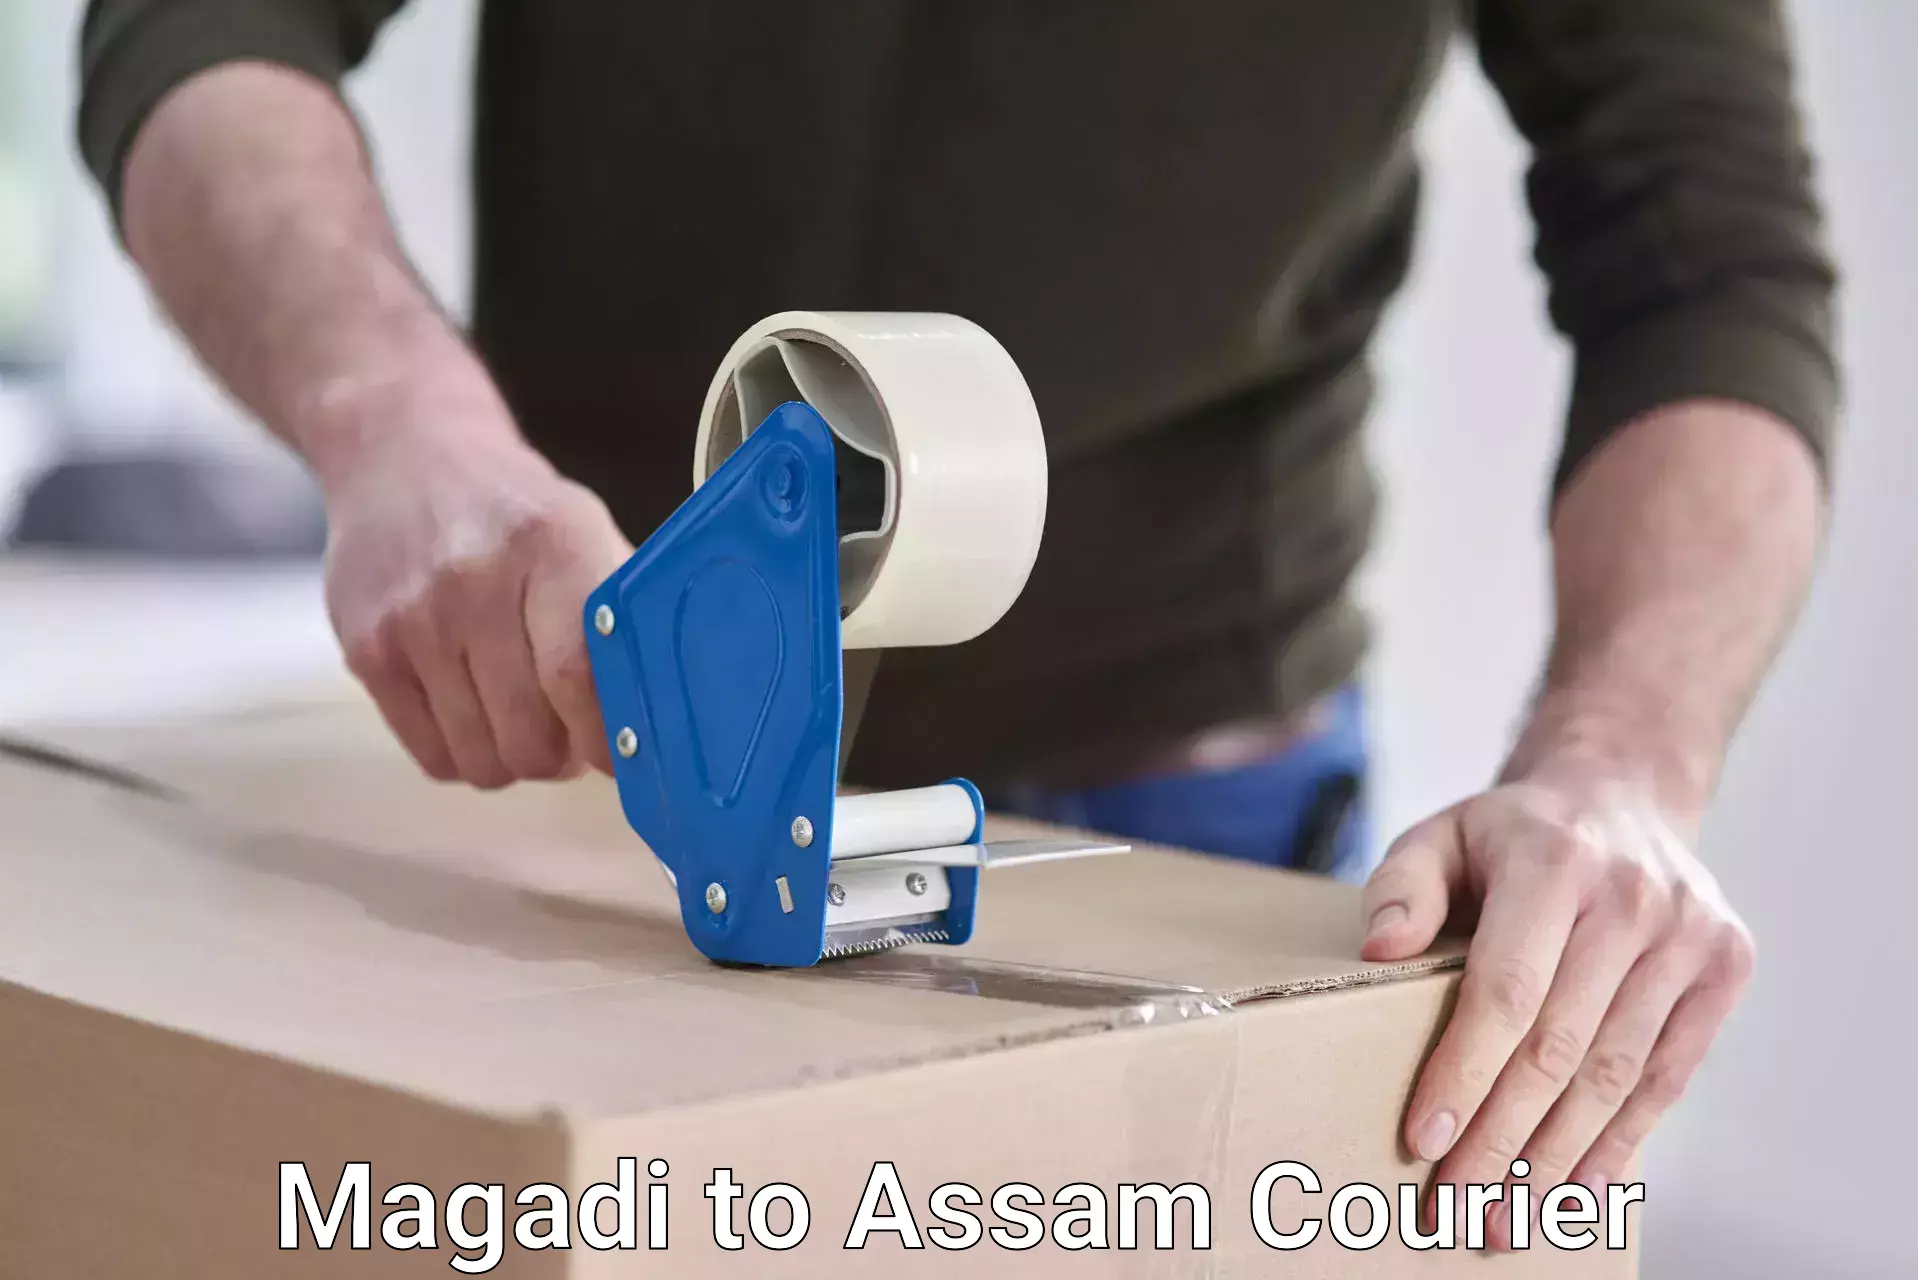 Next-generation courier services Magadi to Mangaldoi